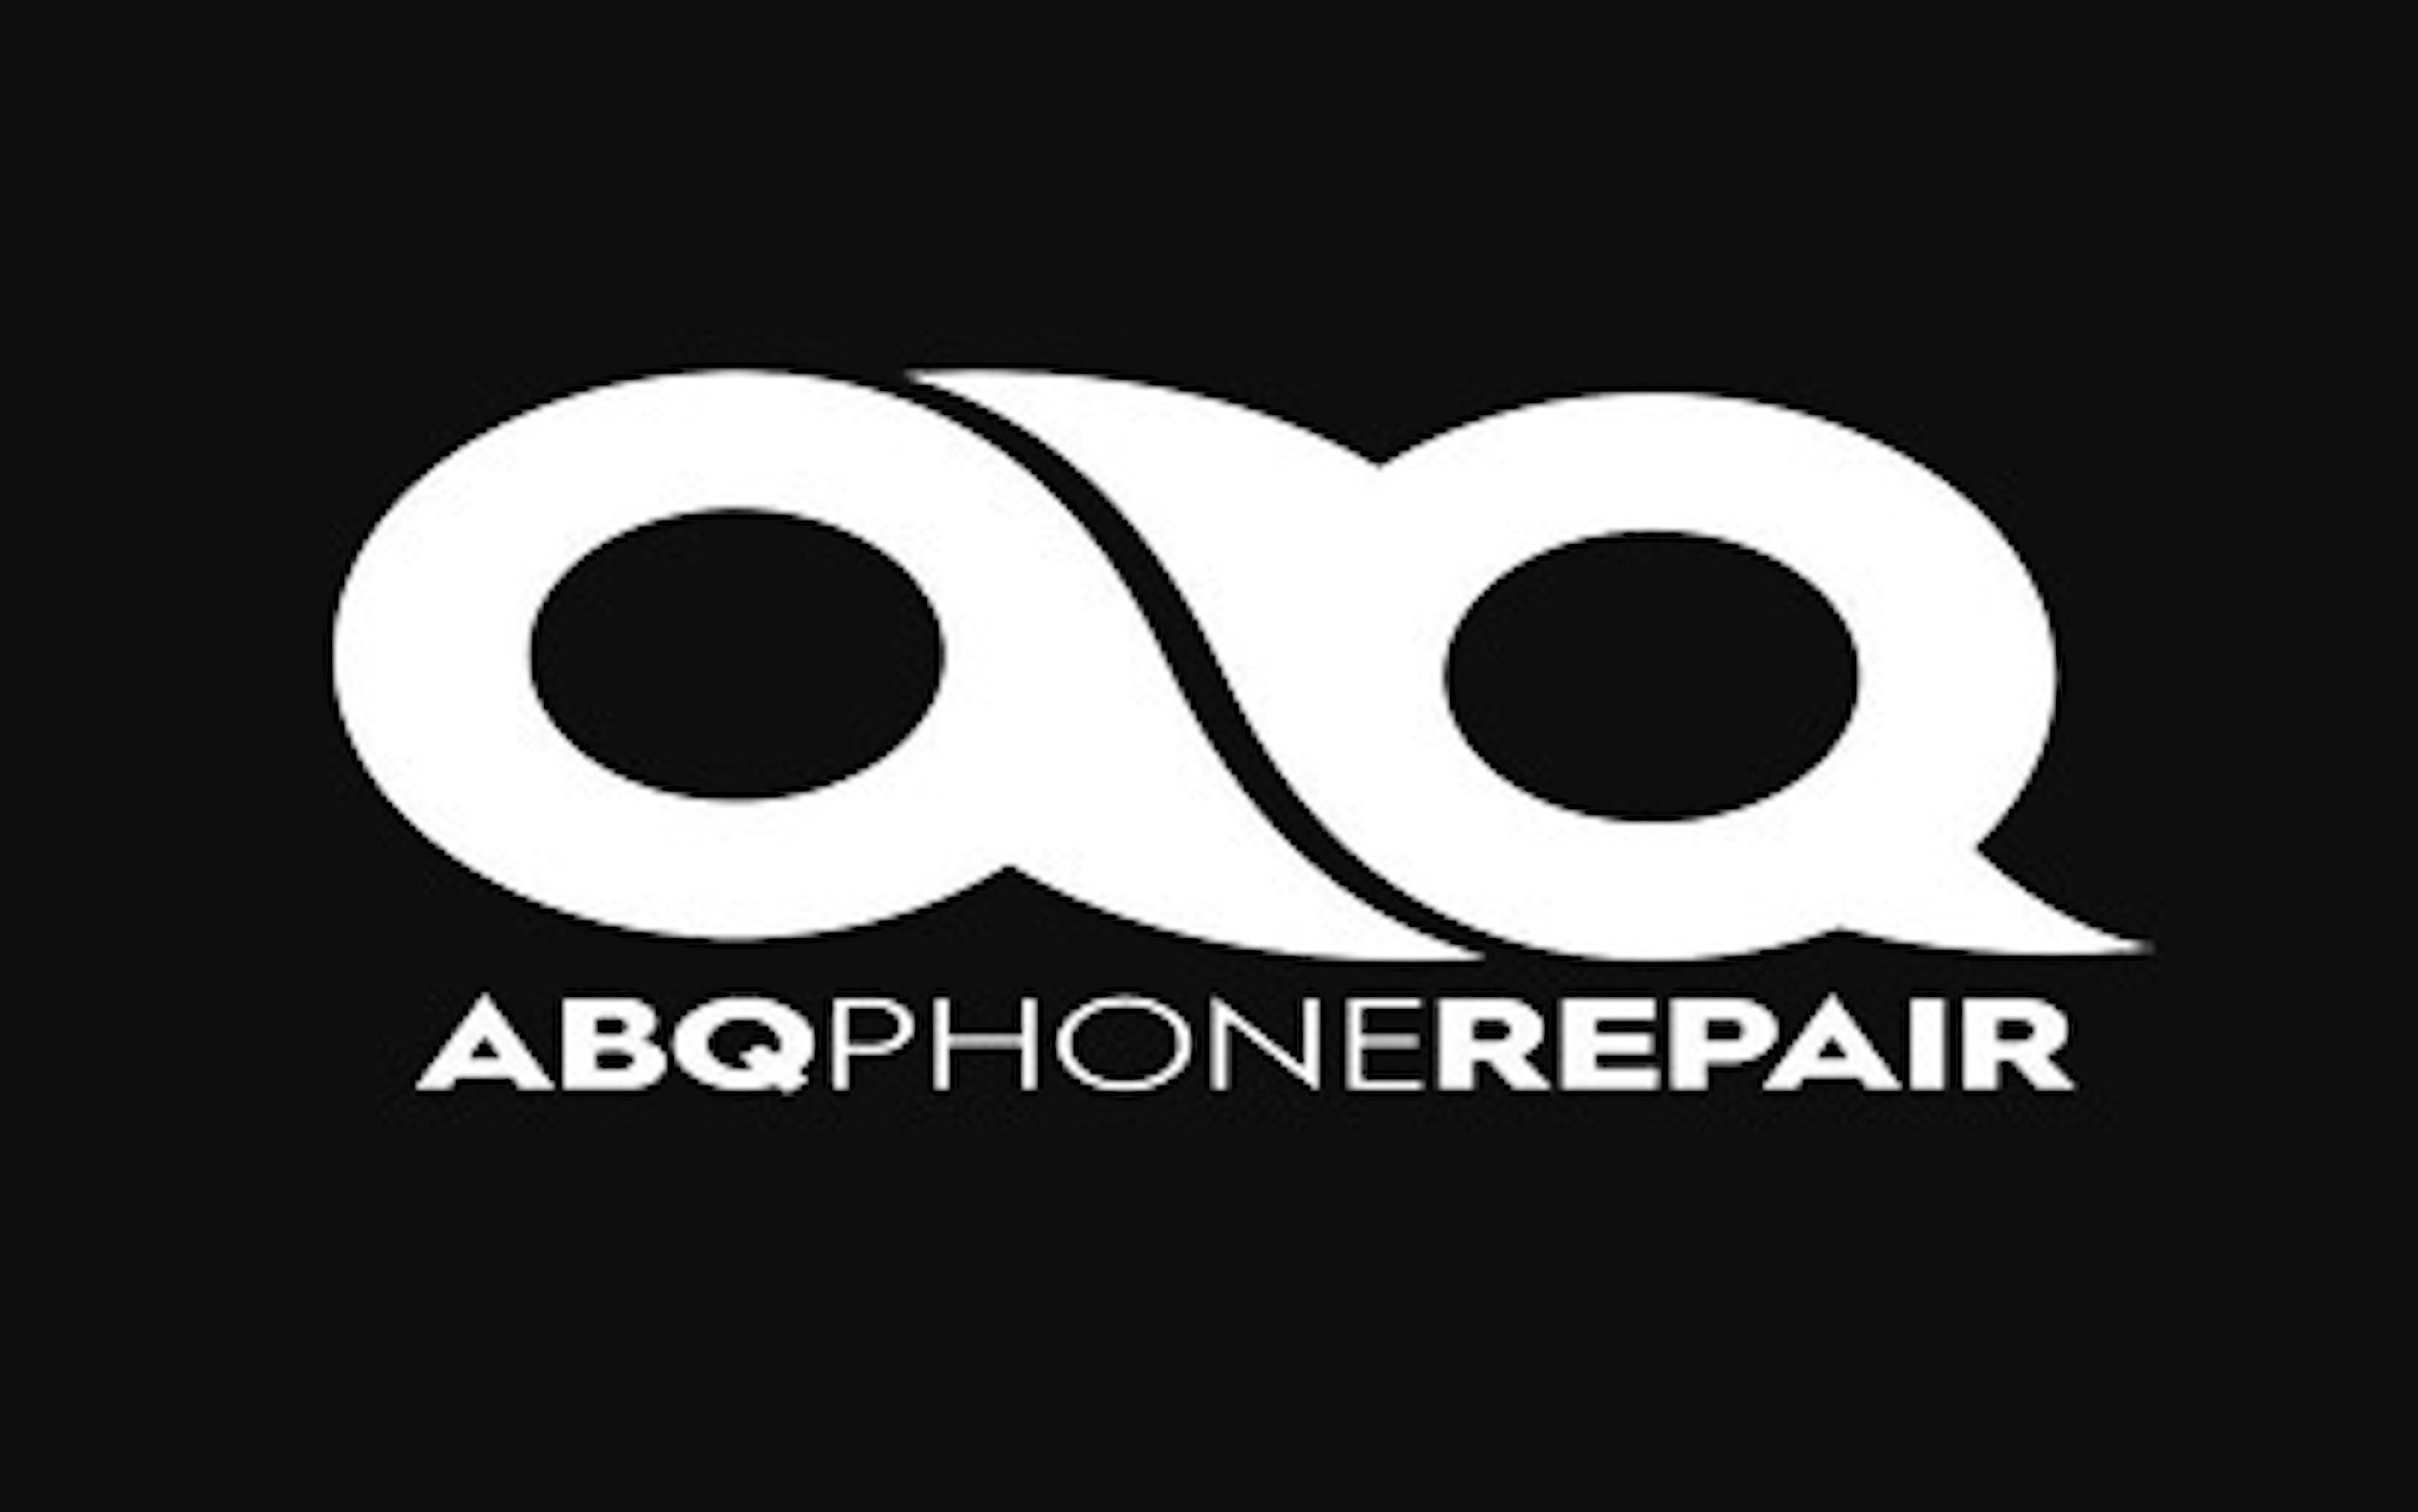 Phone Repair Albuquerque